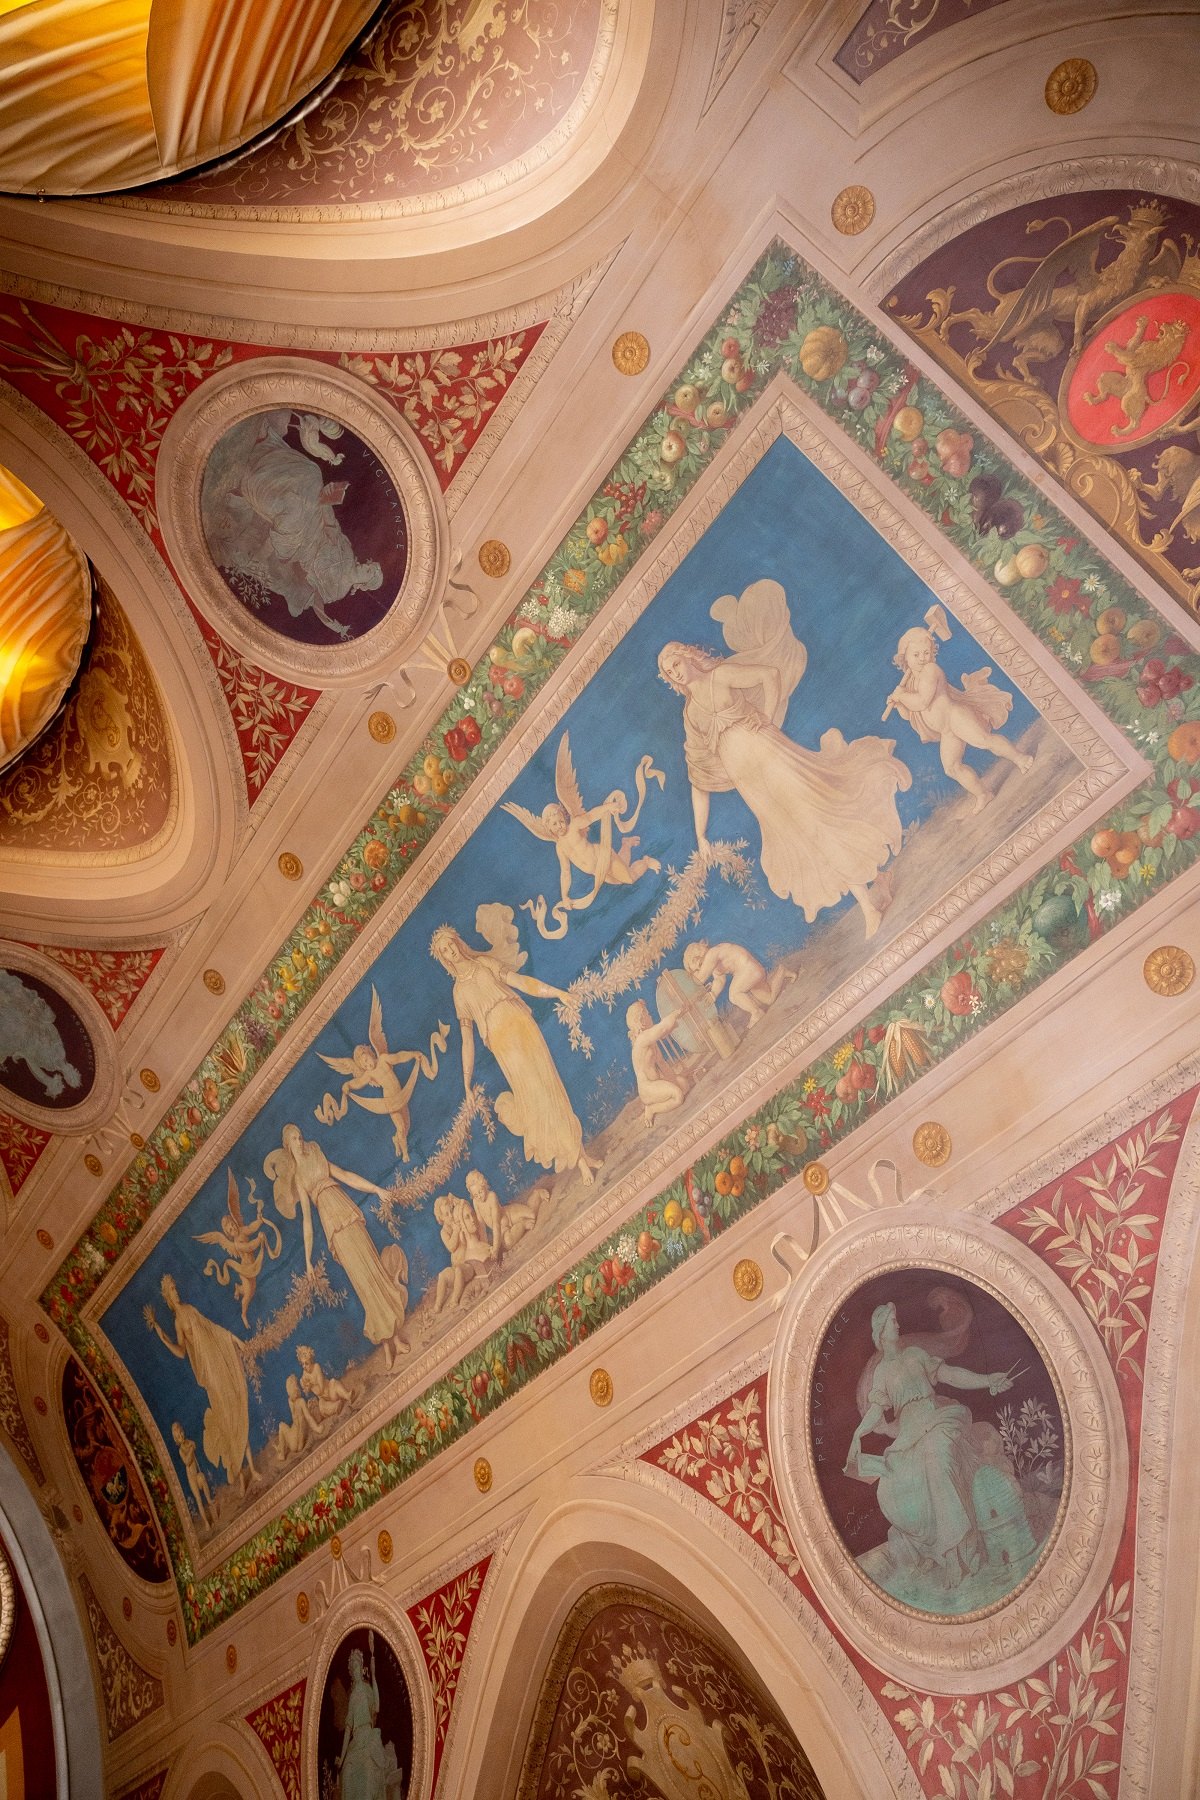 Vue du
plafond peint de la salle pompéienne.